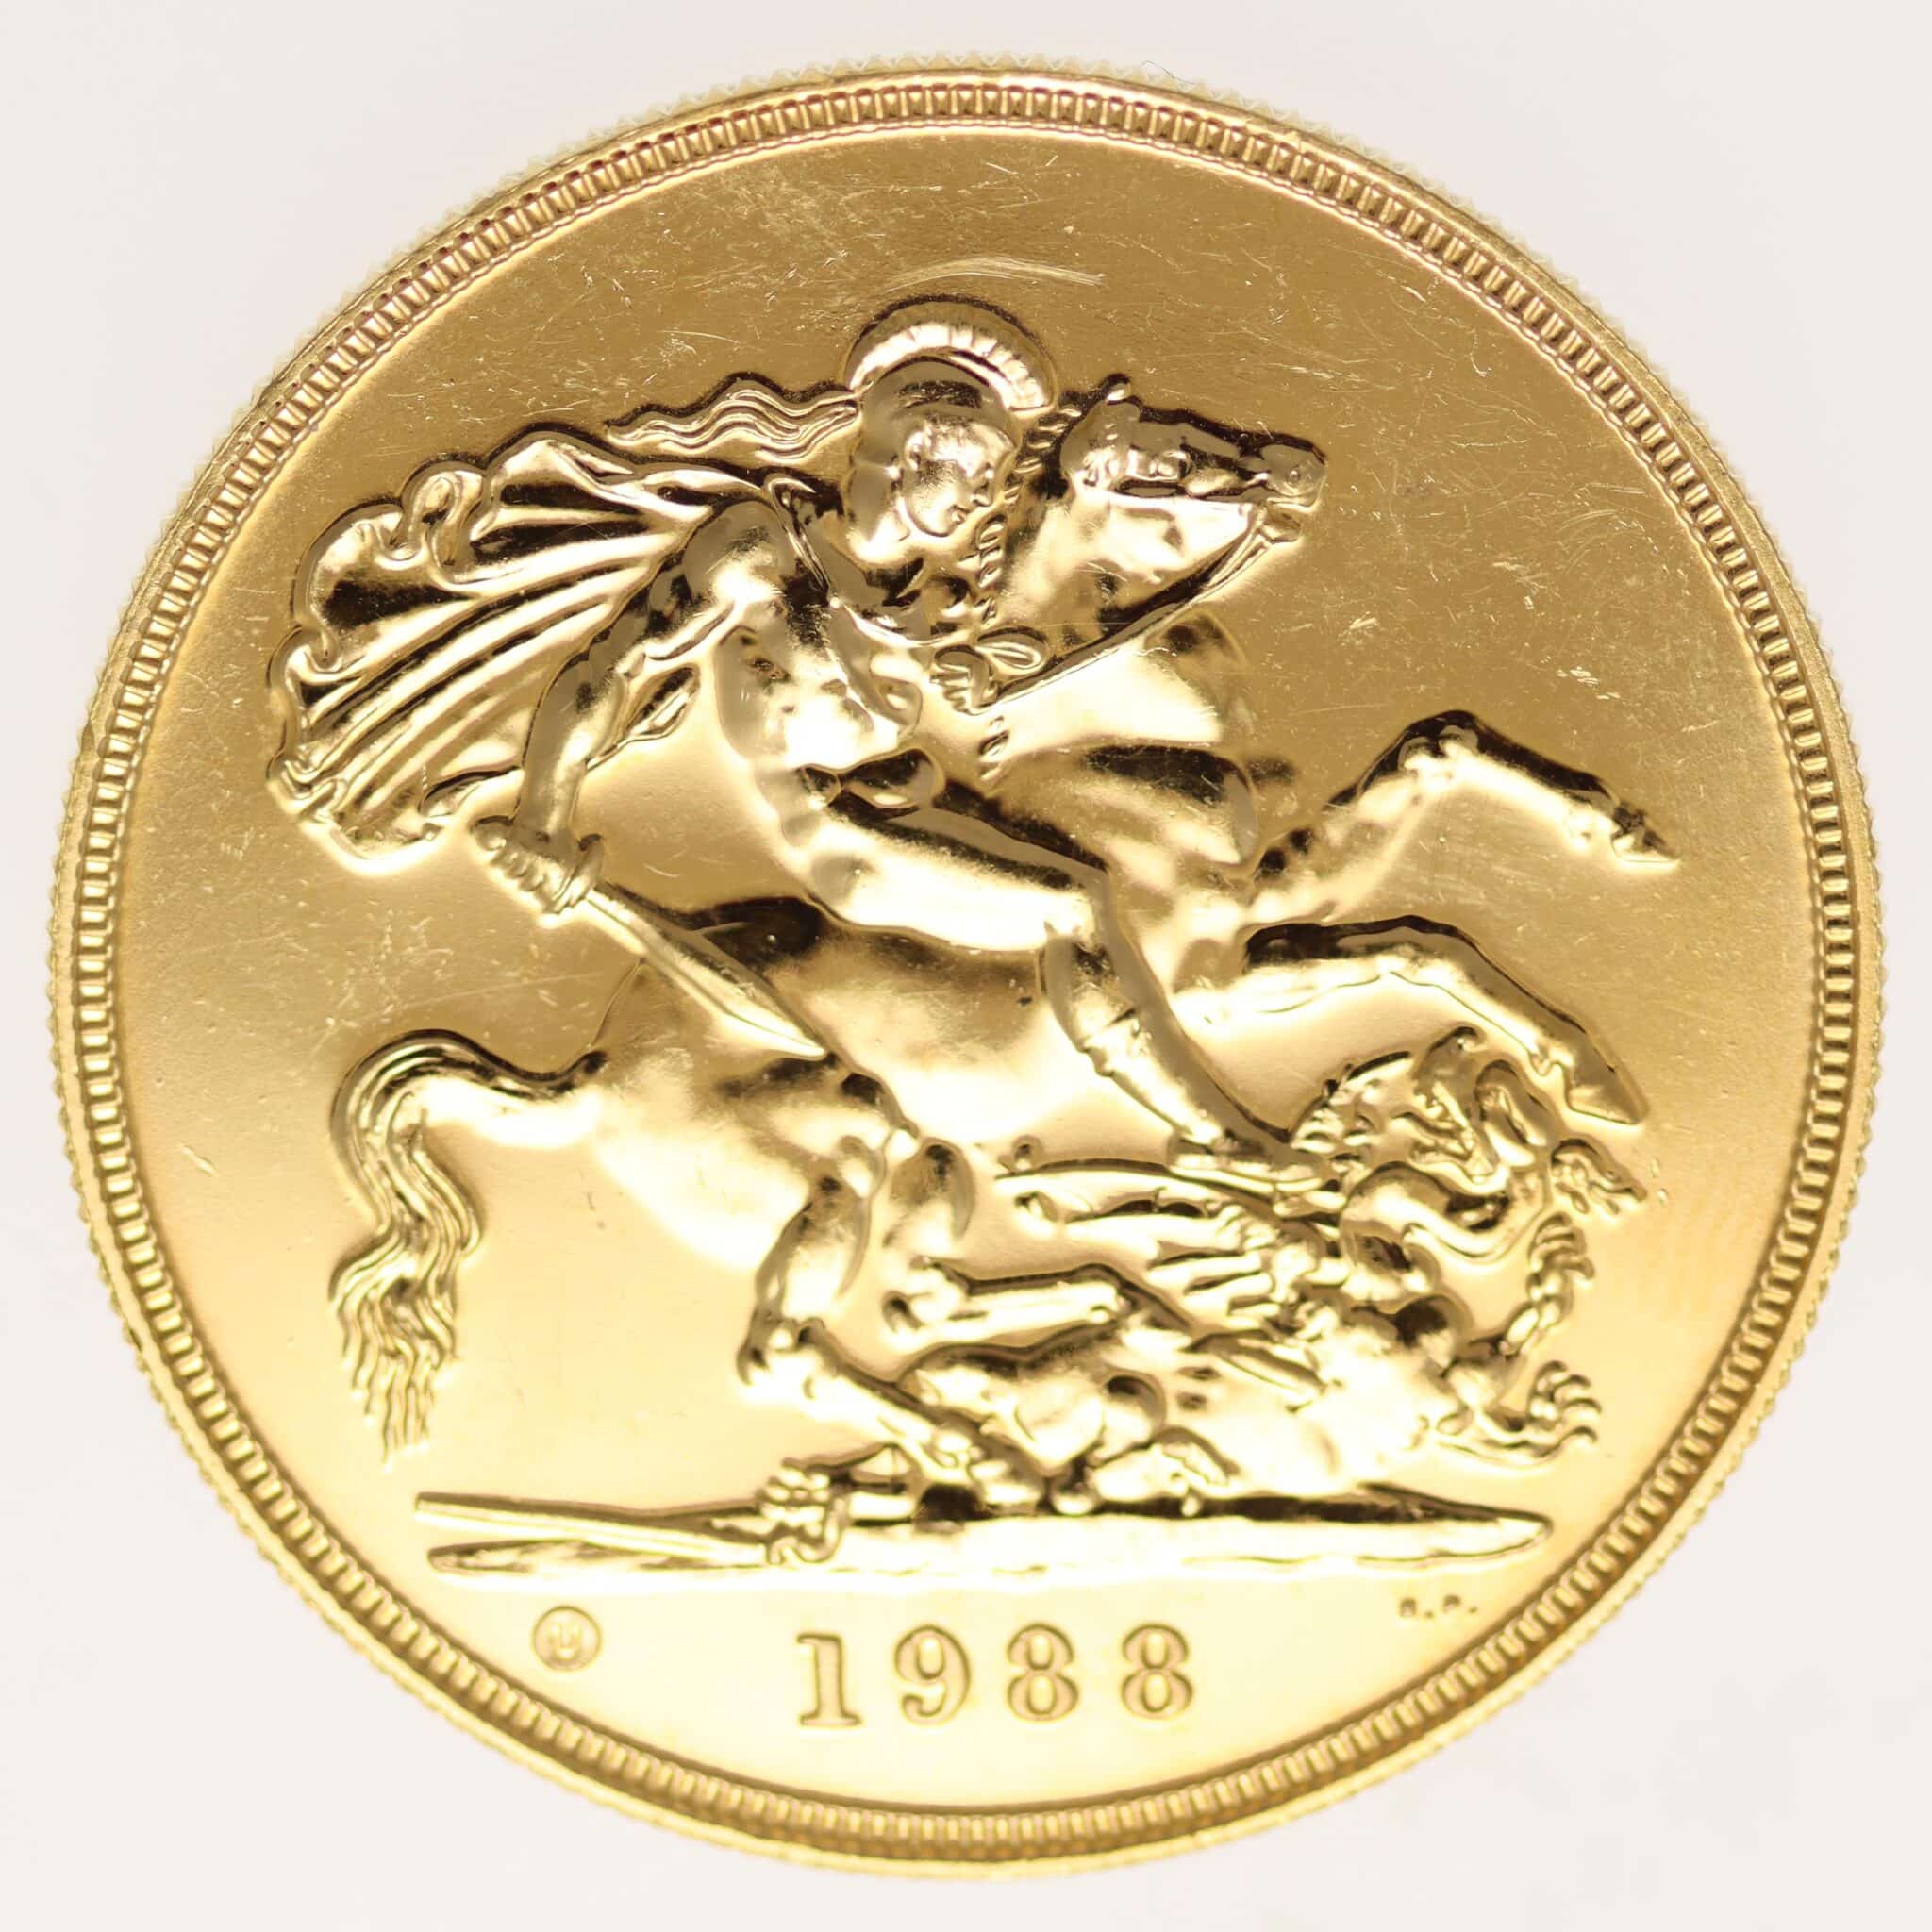 grossbritannien - Großbritannien Elisabeth II. 5 Pounds 1988